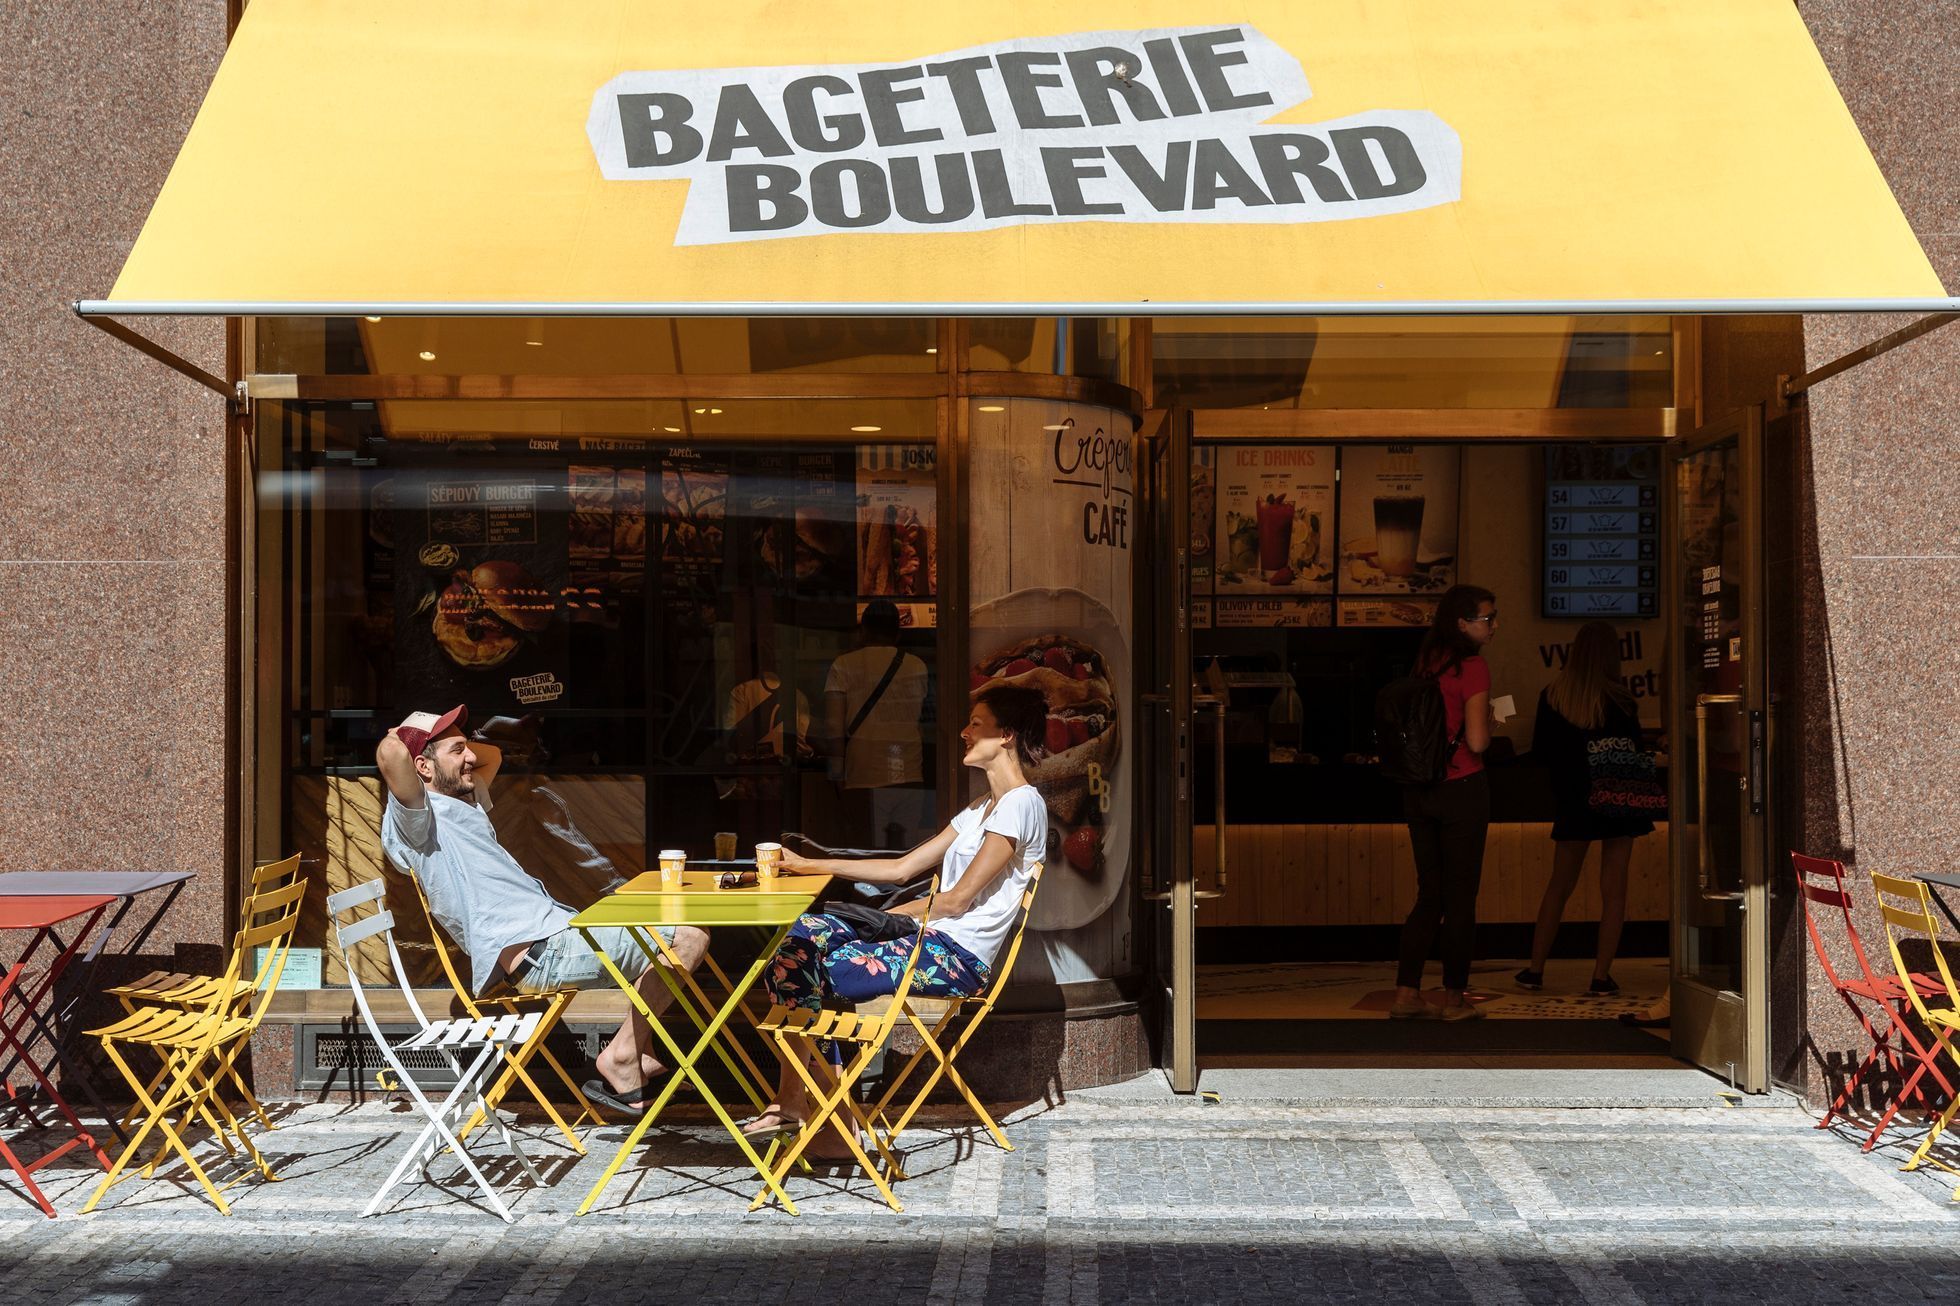 Bageterie Boulevard, občerstvení, jídlo, gastronomie, pečivo, pekárna